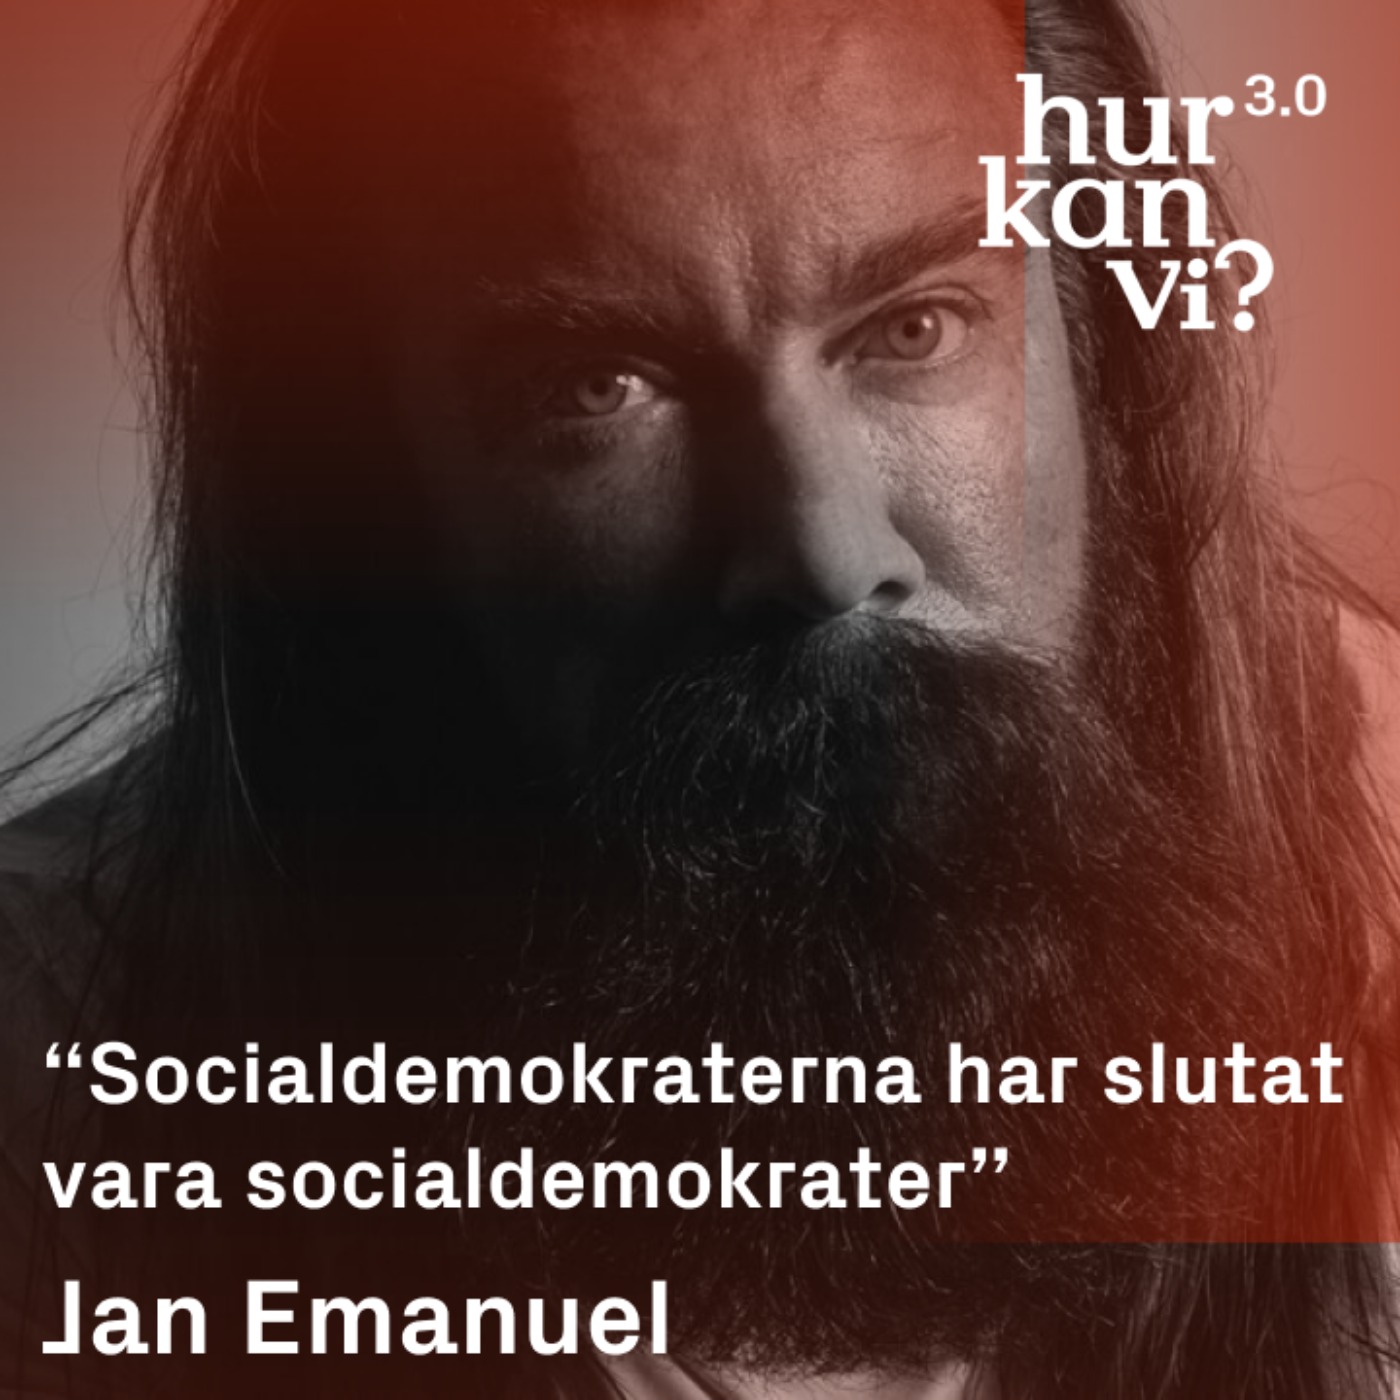 Jan Emanuel - “Socialdemokraterna har slutat vara socialdemokrater”